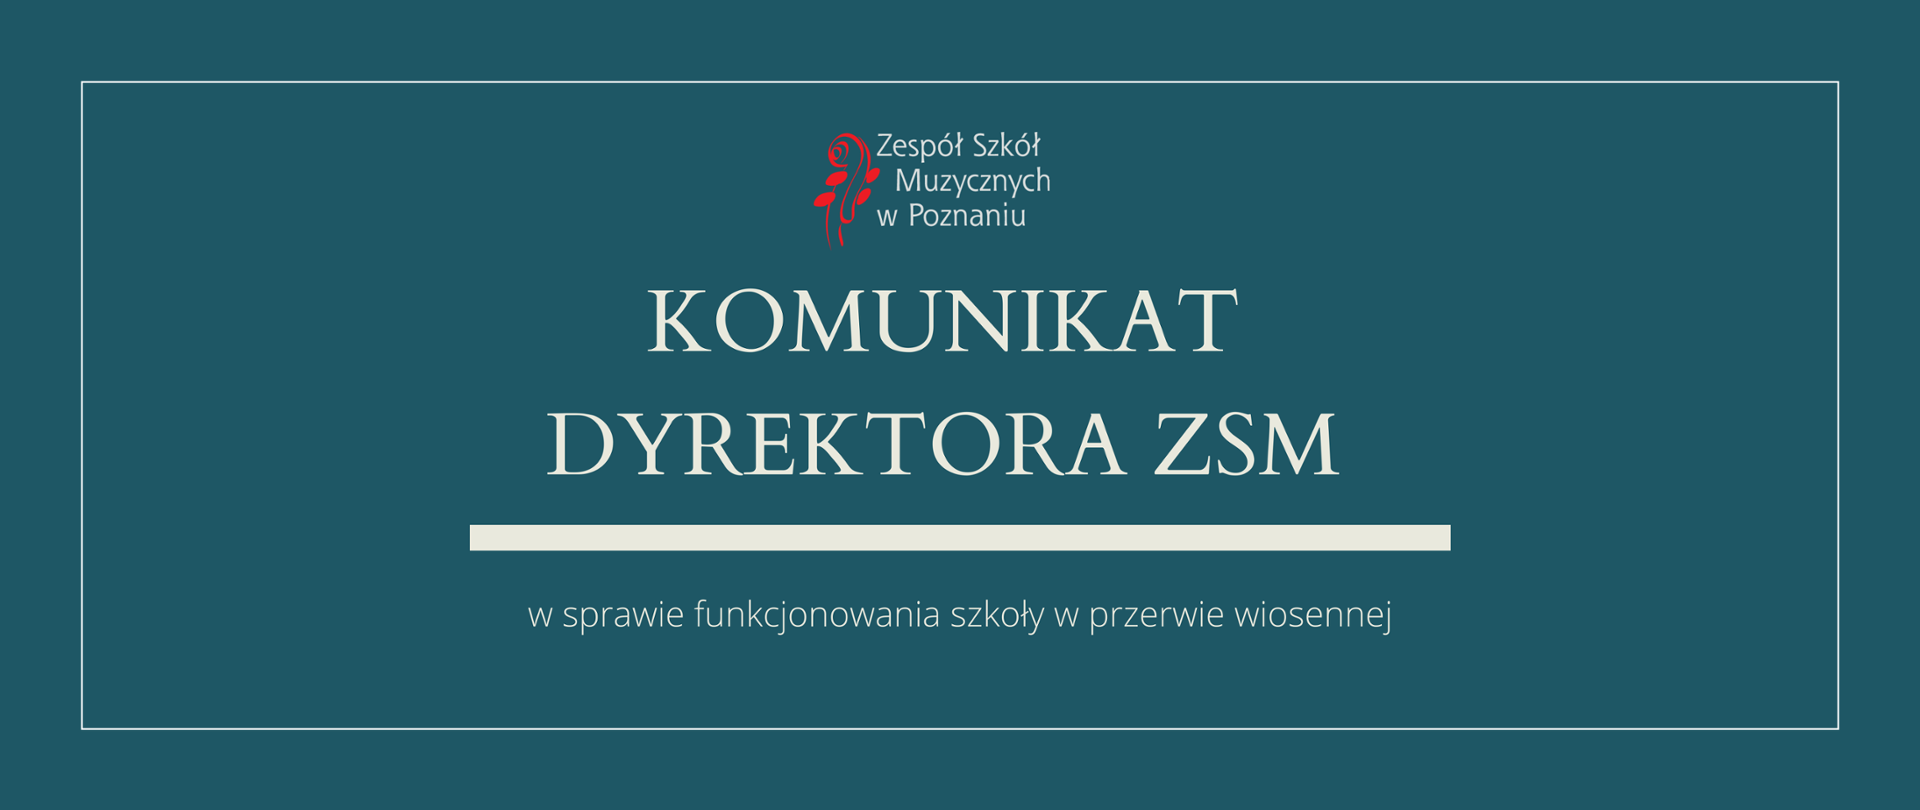 Grafika w morskim odcieniu z logo ZSM i tekstem /"KOMUNIKAT DYREKTORA ZSM"/ poniżej biała gruba linia, niżej tekst /"w sprawie funkcjonowania szkoły w przerwie wiosennej"/